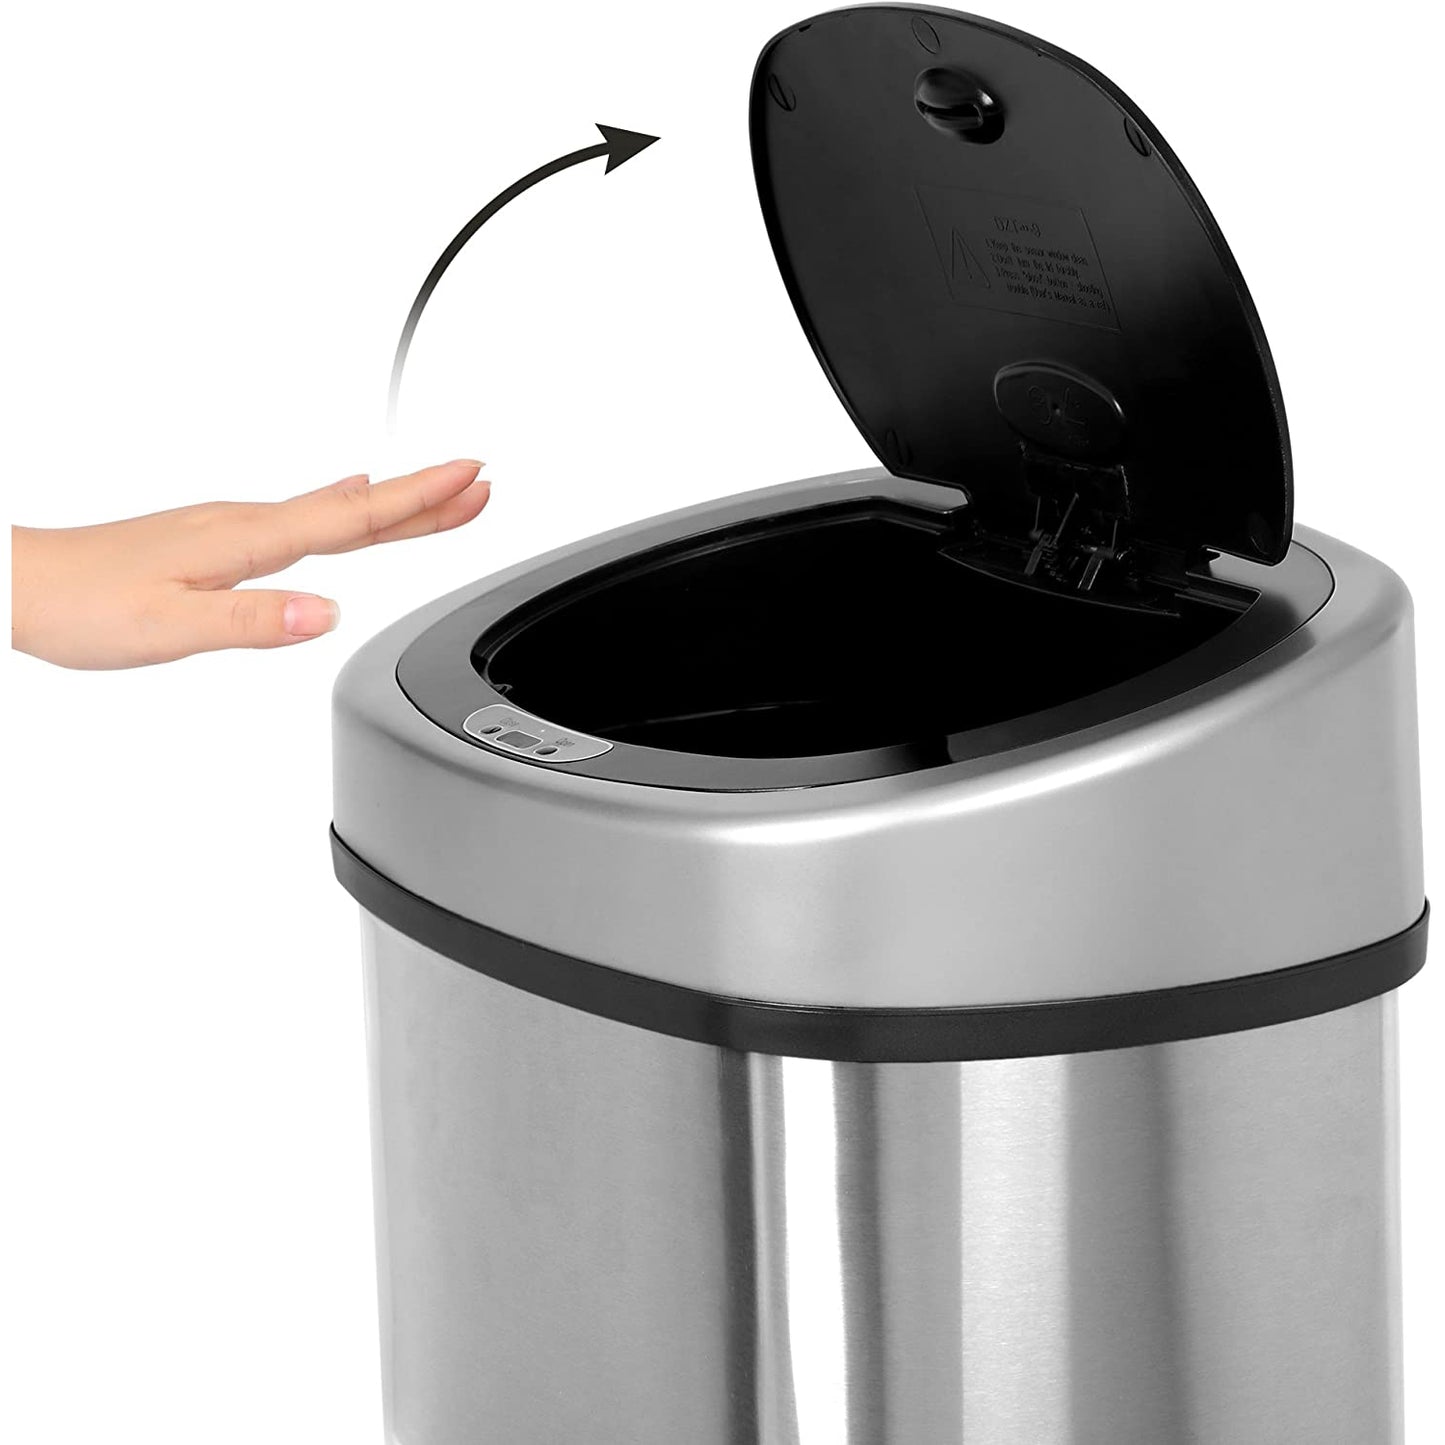 Poubelle Nancy's Trash Can - Acier inoxydable - Capteur de mouvement infrarouge - 50 l